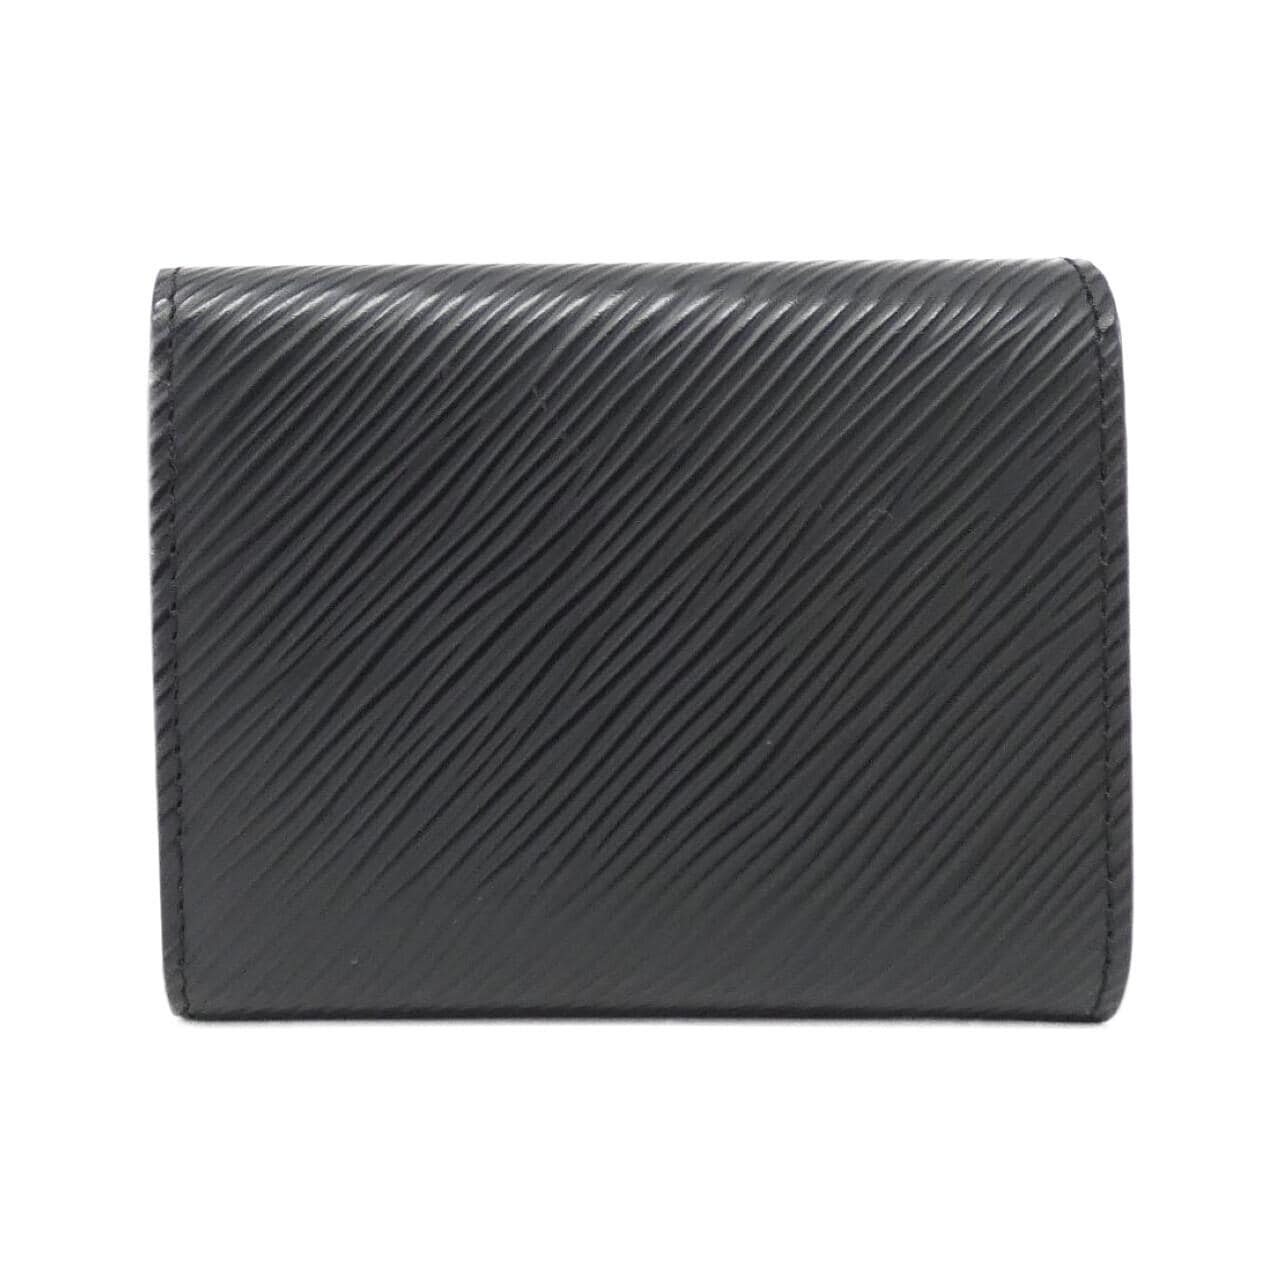 LOUIS VUITTON Epi Portefeuille Twist Compact XS M63322 Wallet